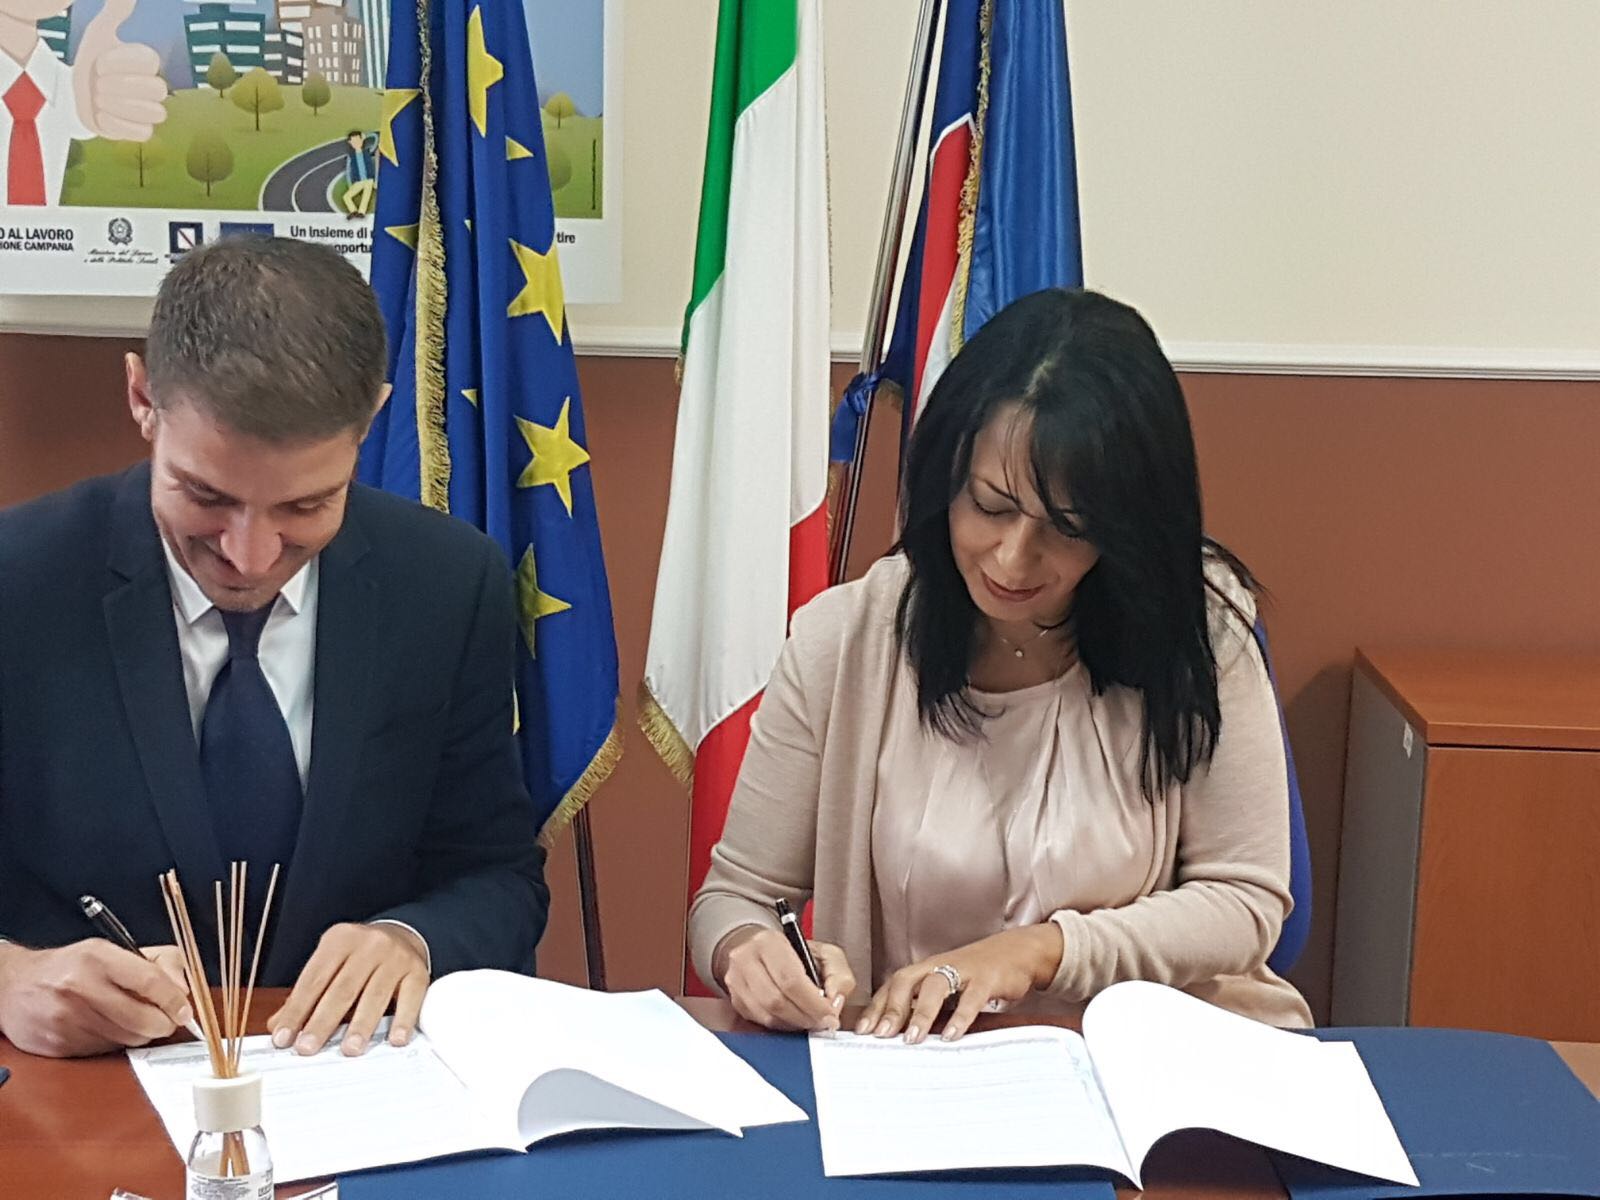  Campania, Palmeri: “Rilancio e valorizzazione dei Centri per l’impiego della provincia di Caserta”